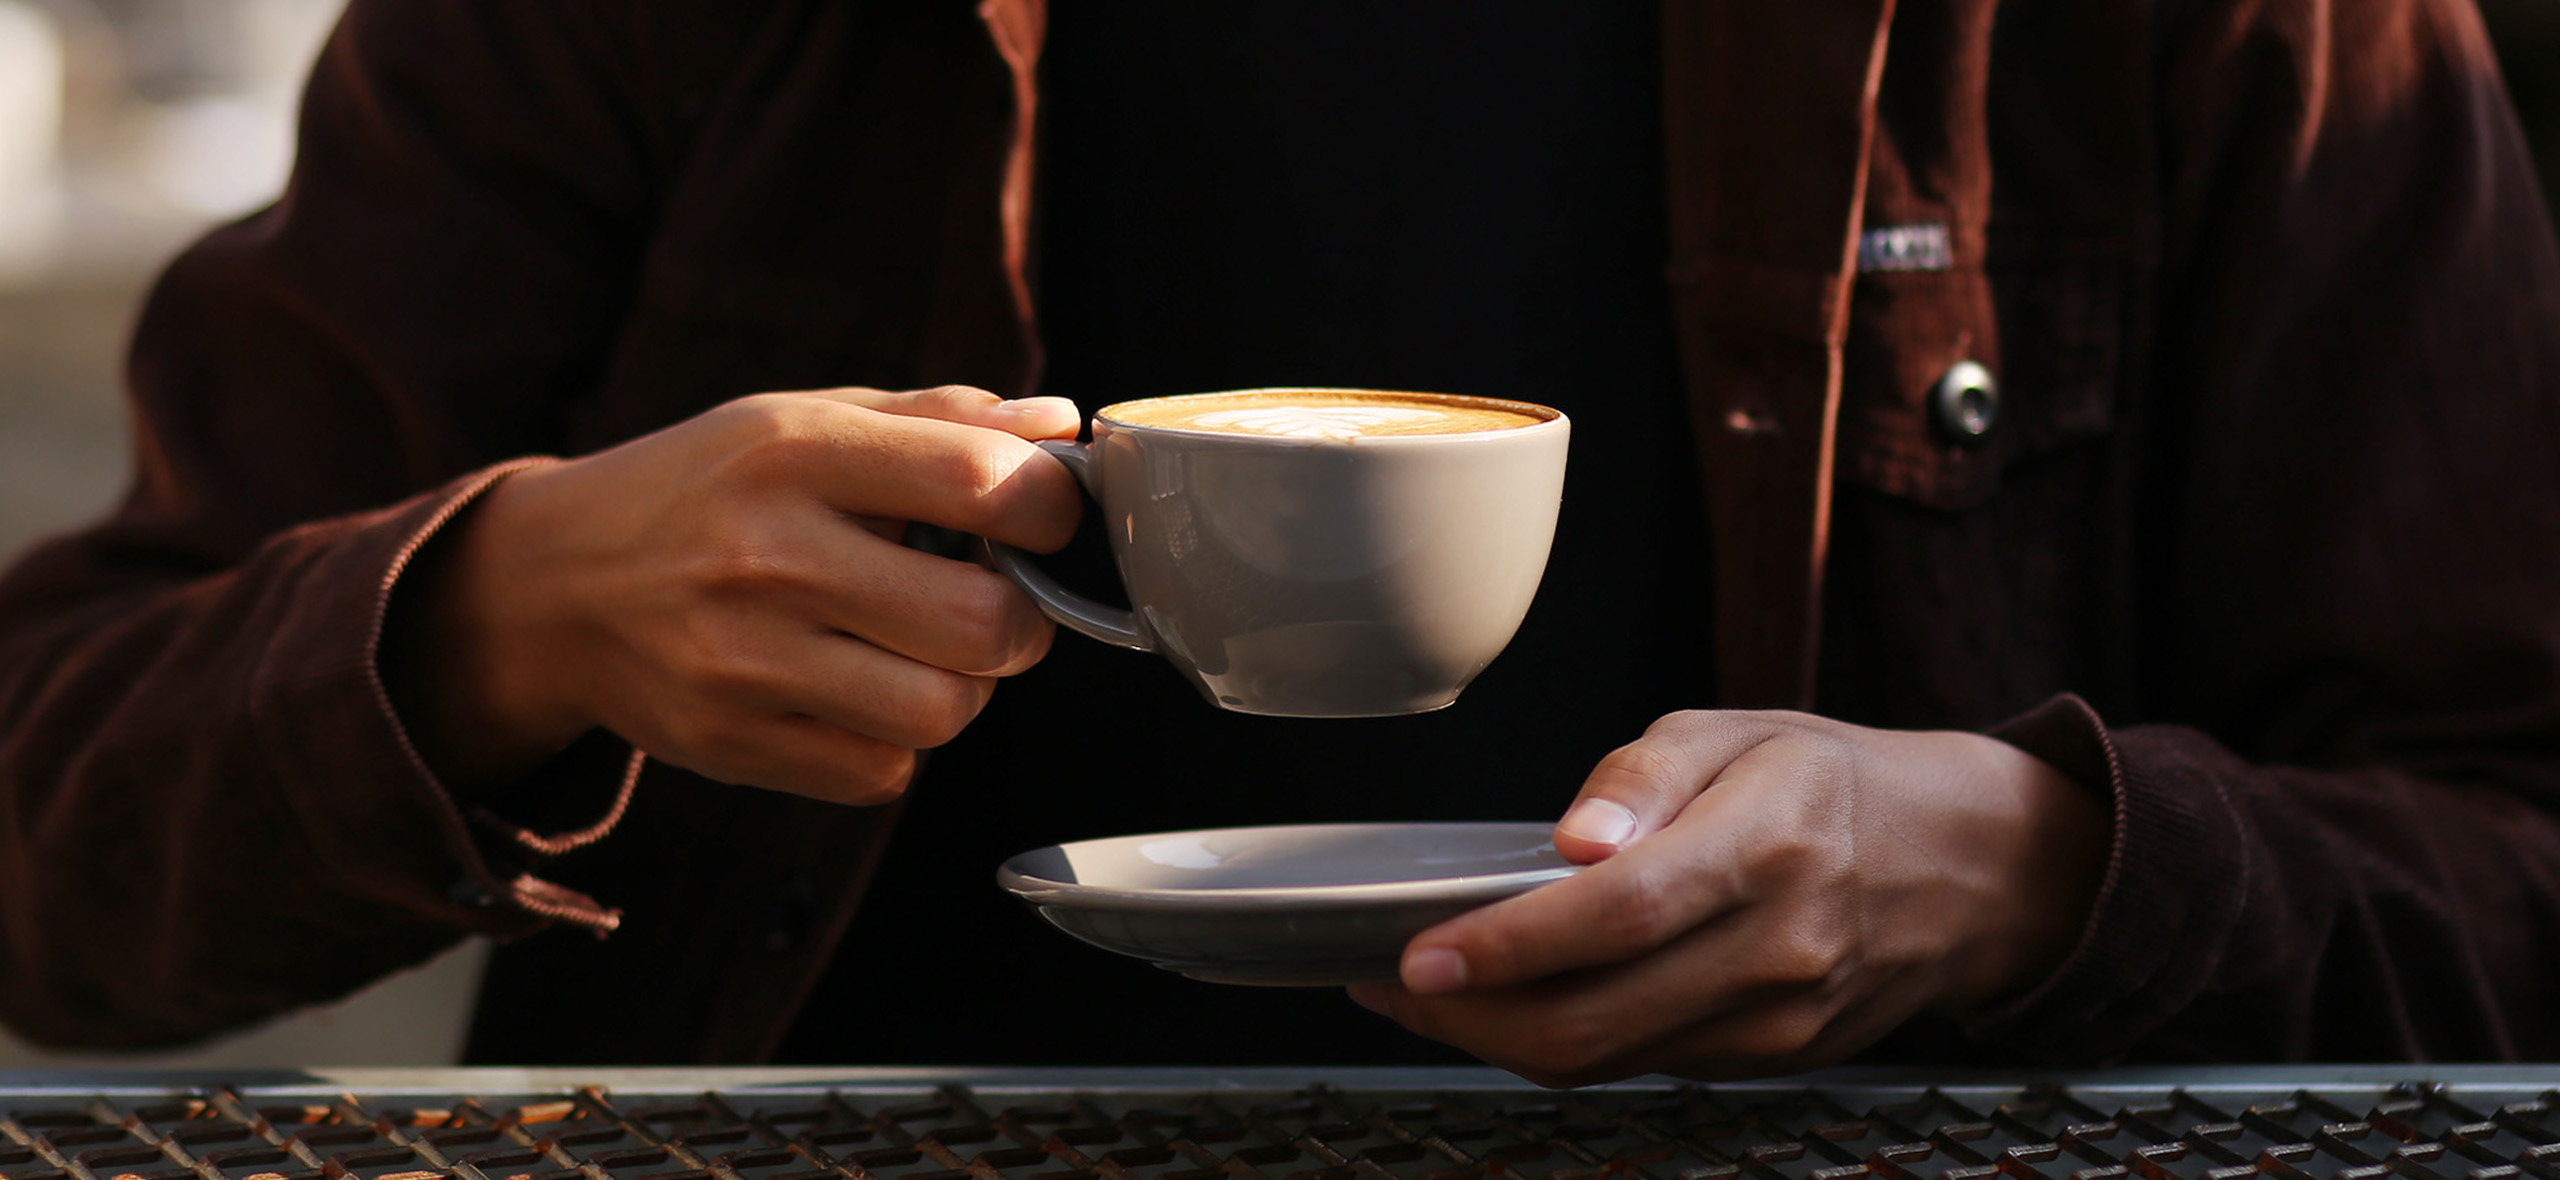 6 утверждений о влиянии кофе на здоровье: разбираемся, правда или вымысел